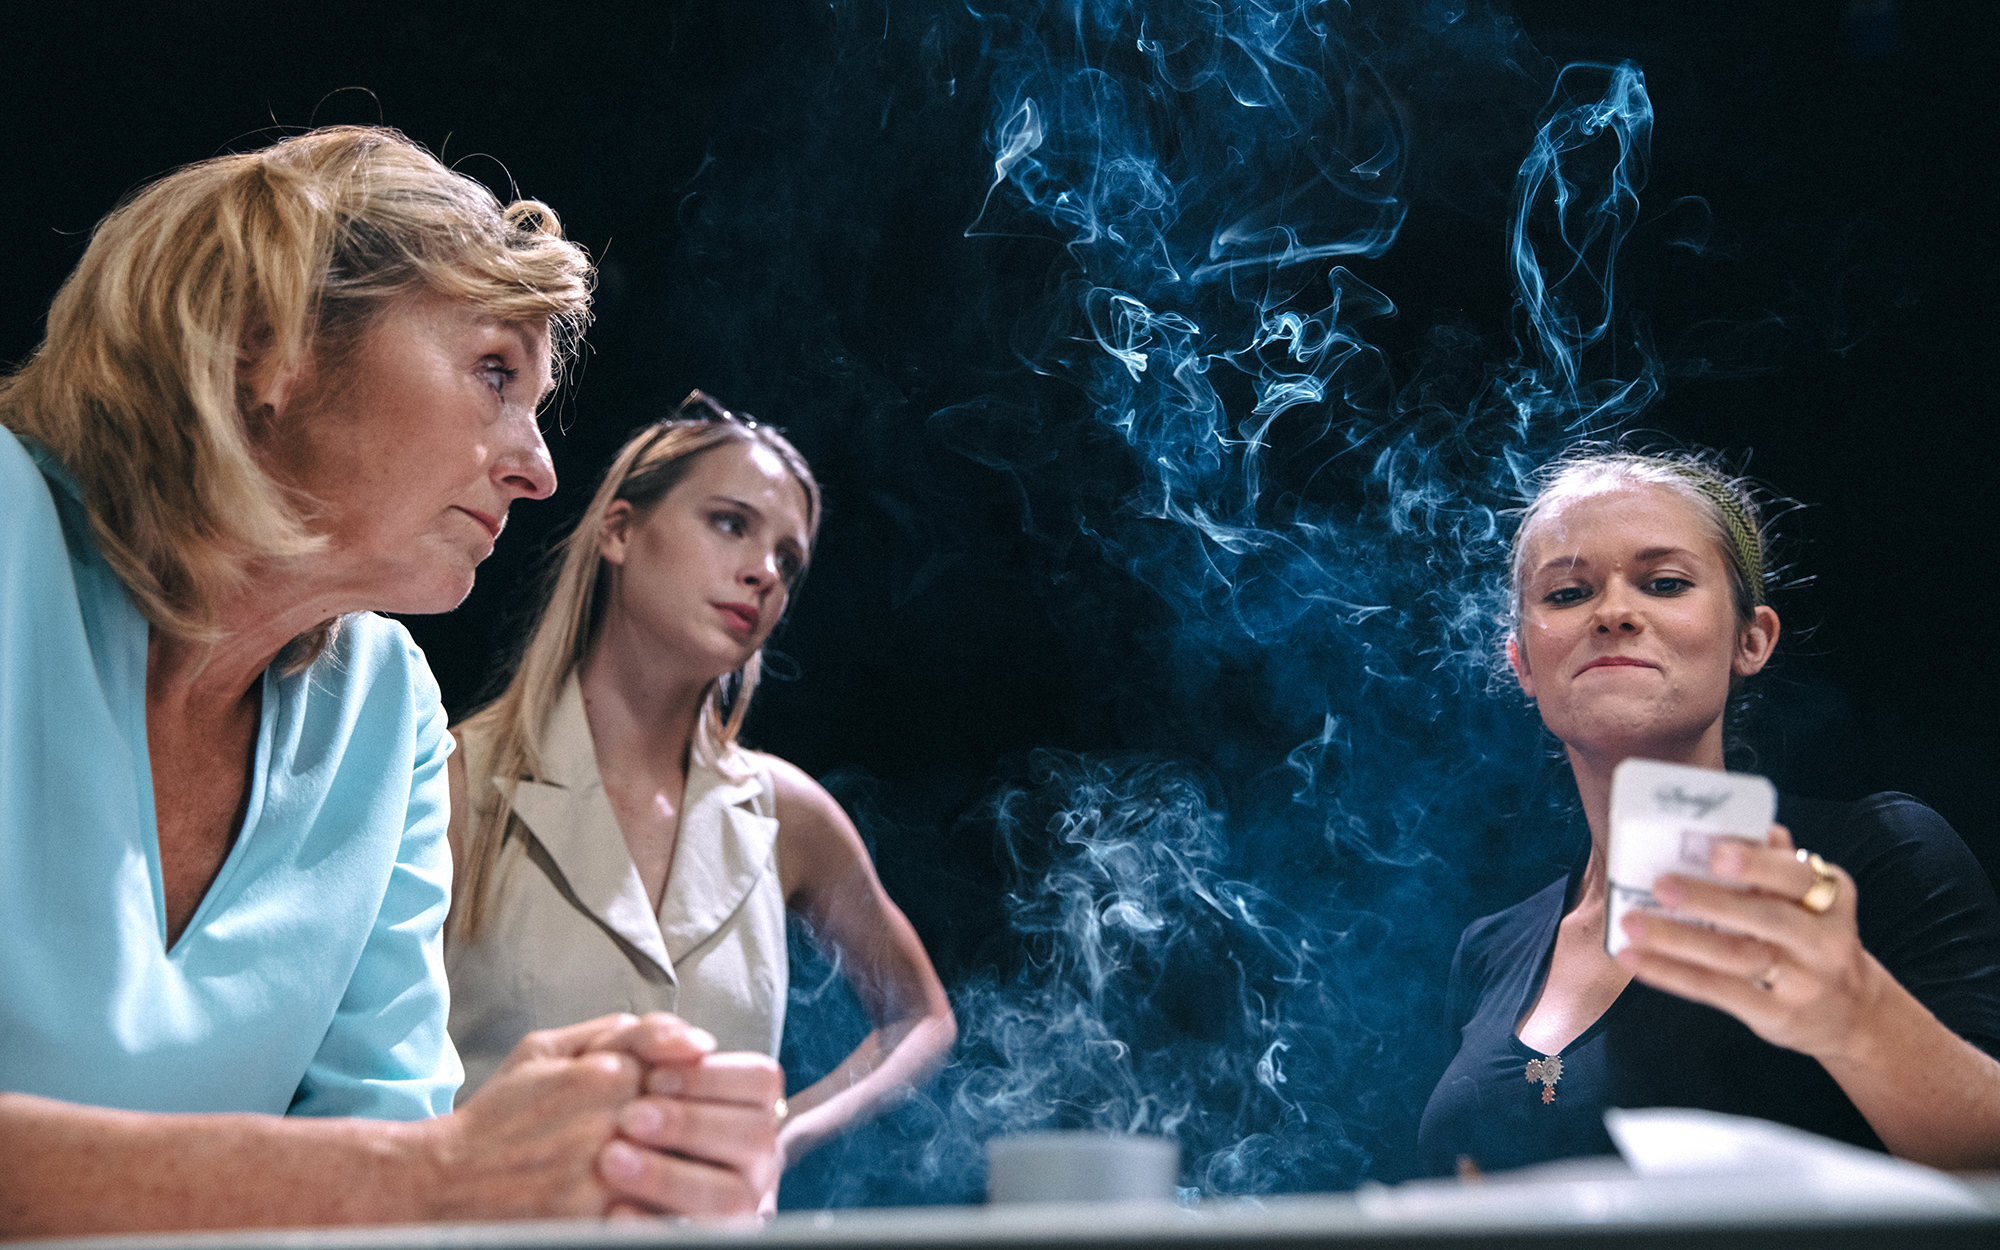 Hana (Judita Zidar) in Karla (Klara Kuk) opazujeta Lizo (Ana Pavlin), ki se premeteno nasmiha. Obdaja jo cigaretni dim.  Avtor fotografije: Peter Giodani.